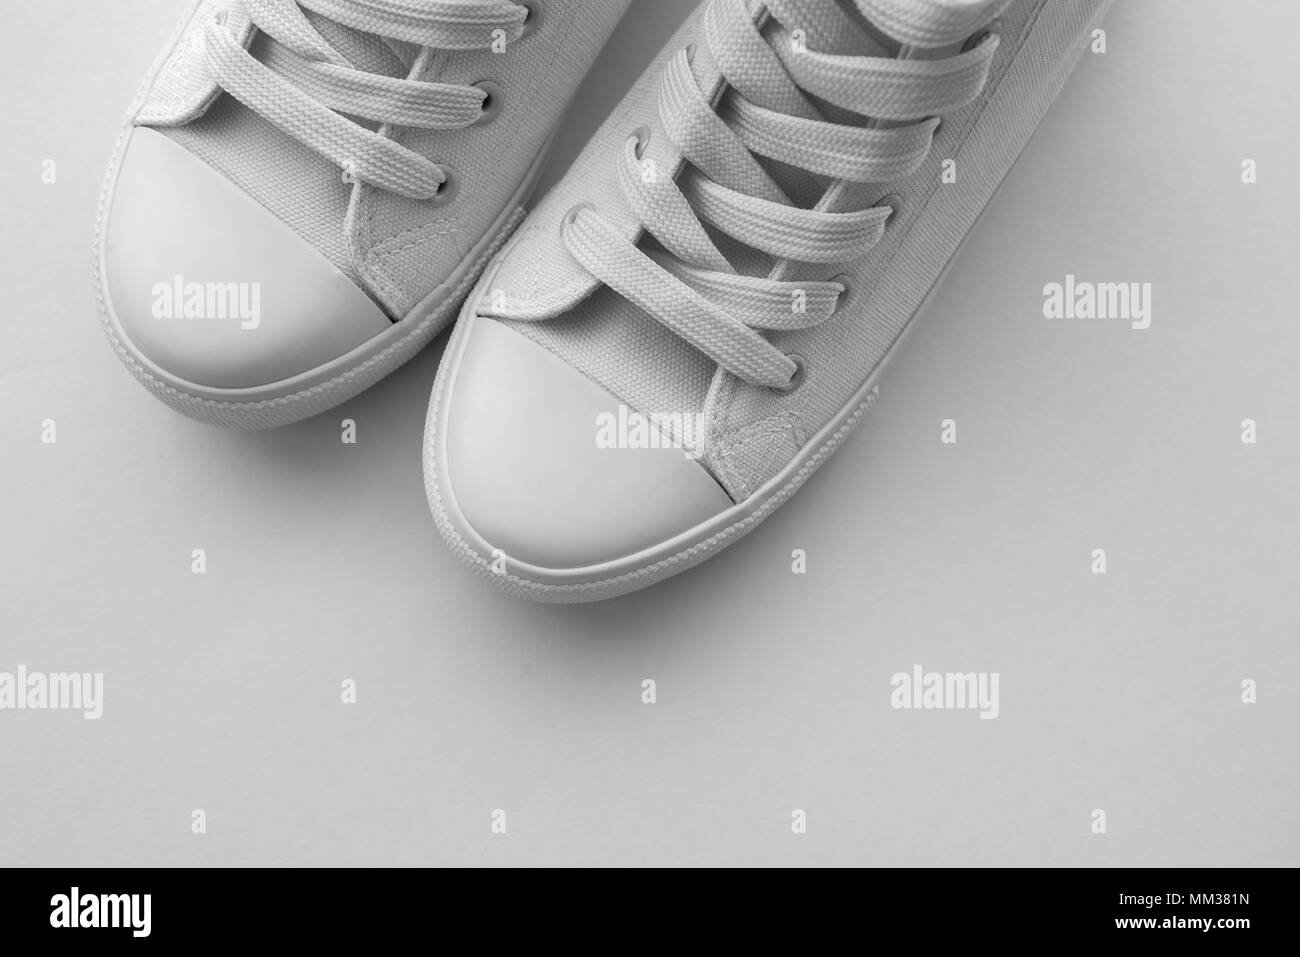 Paar weiße Turnschuhe mit Kopieren, modern and canvas Schuhe  Stockfotografie - Alamy